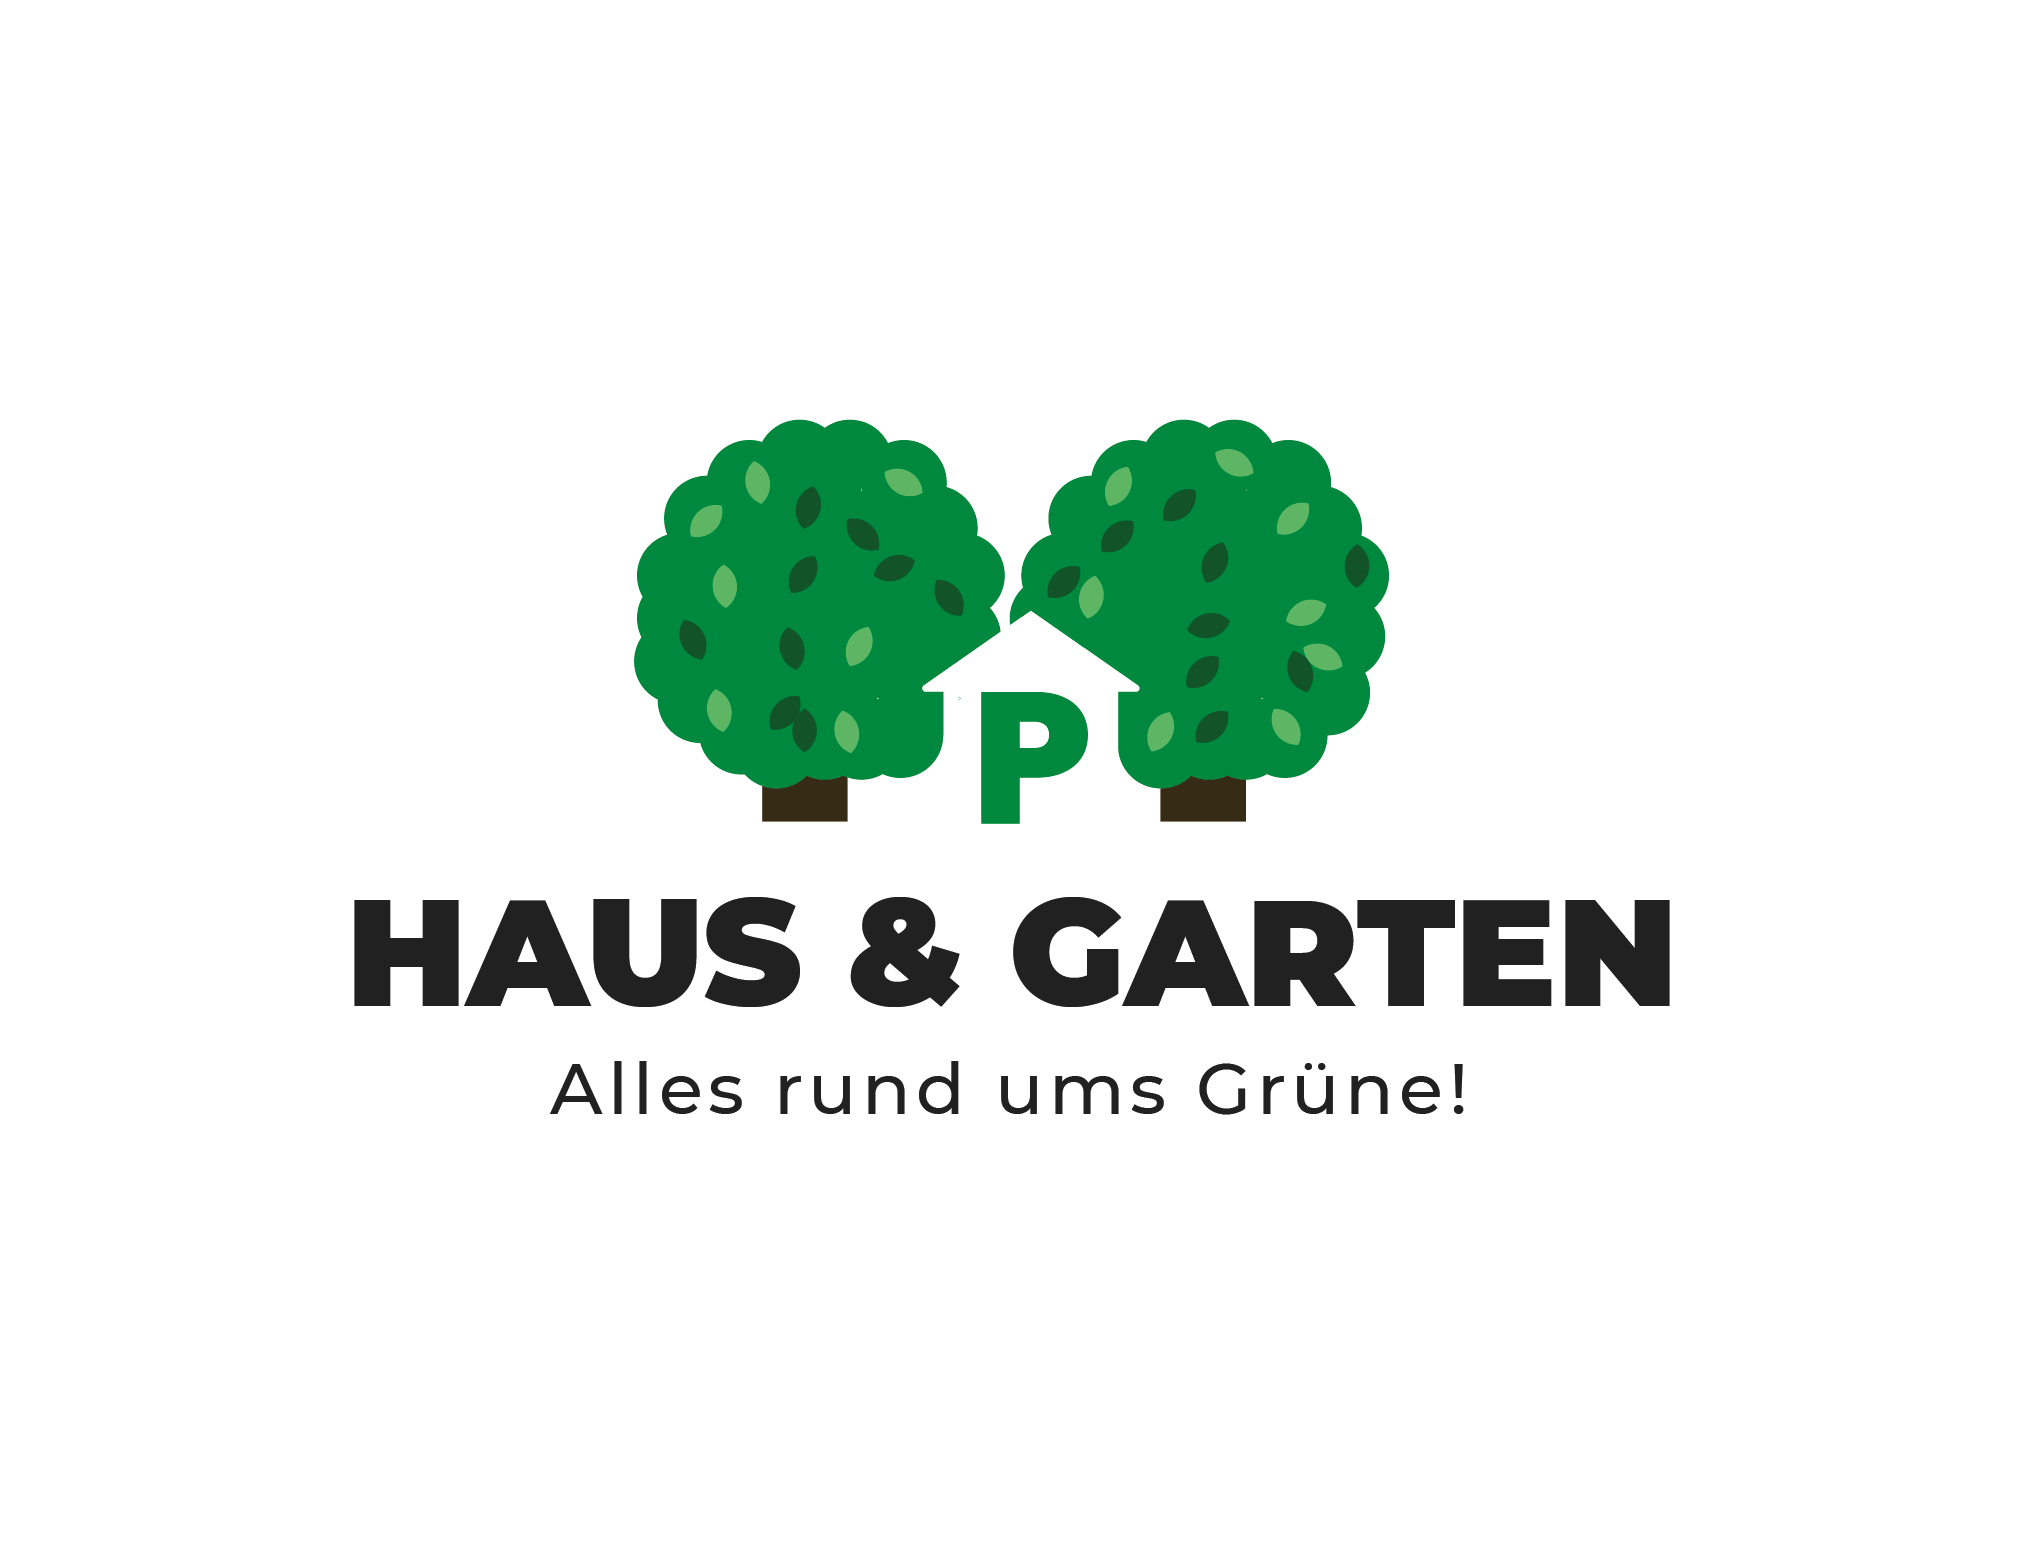 Bild 1 PM Haus & Garten GbR in Hannover